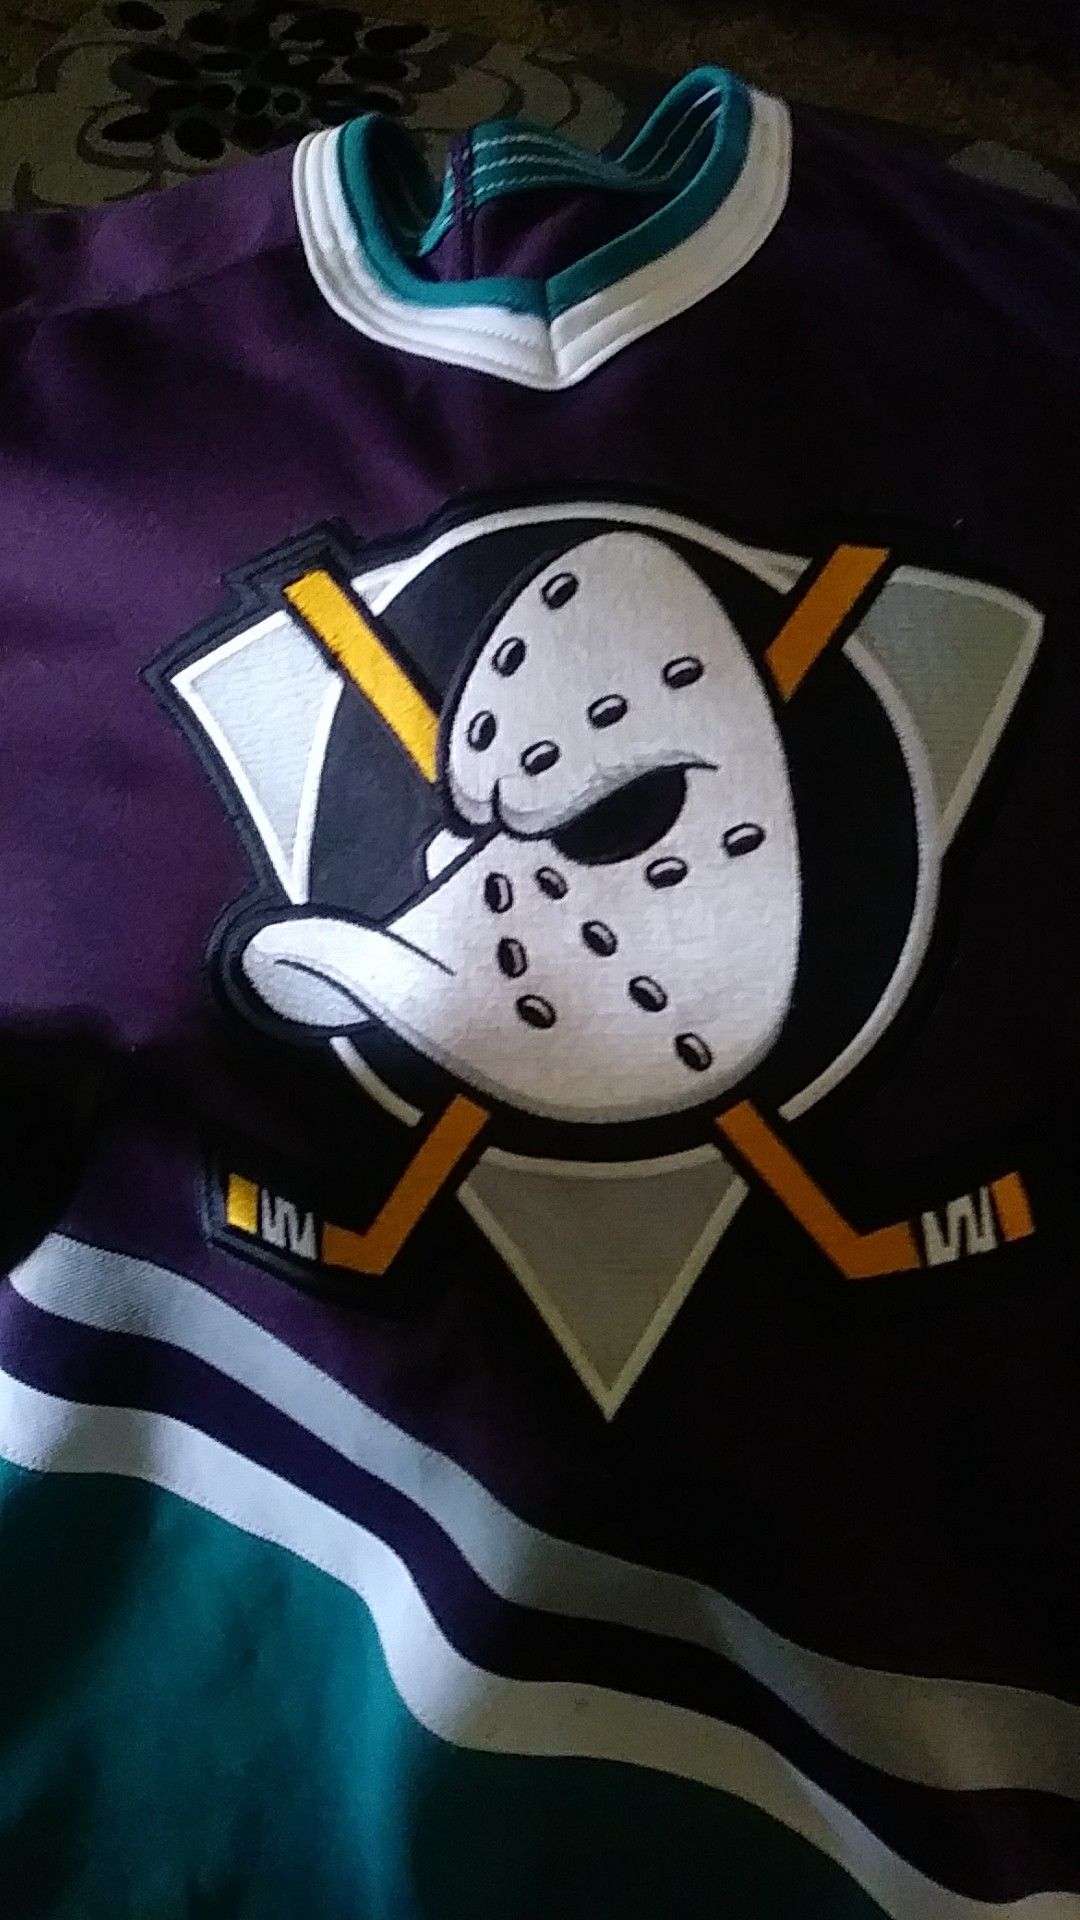 Mighty ducks hockey jersey